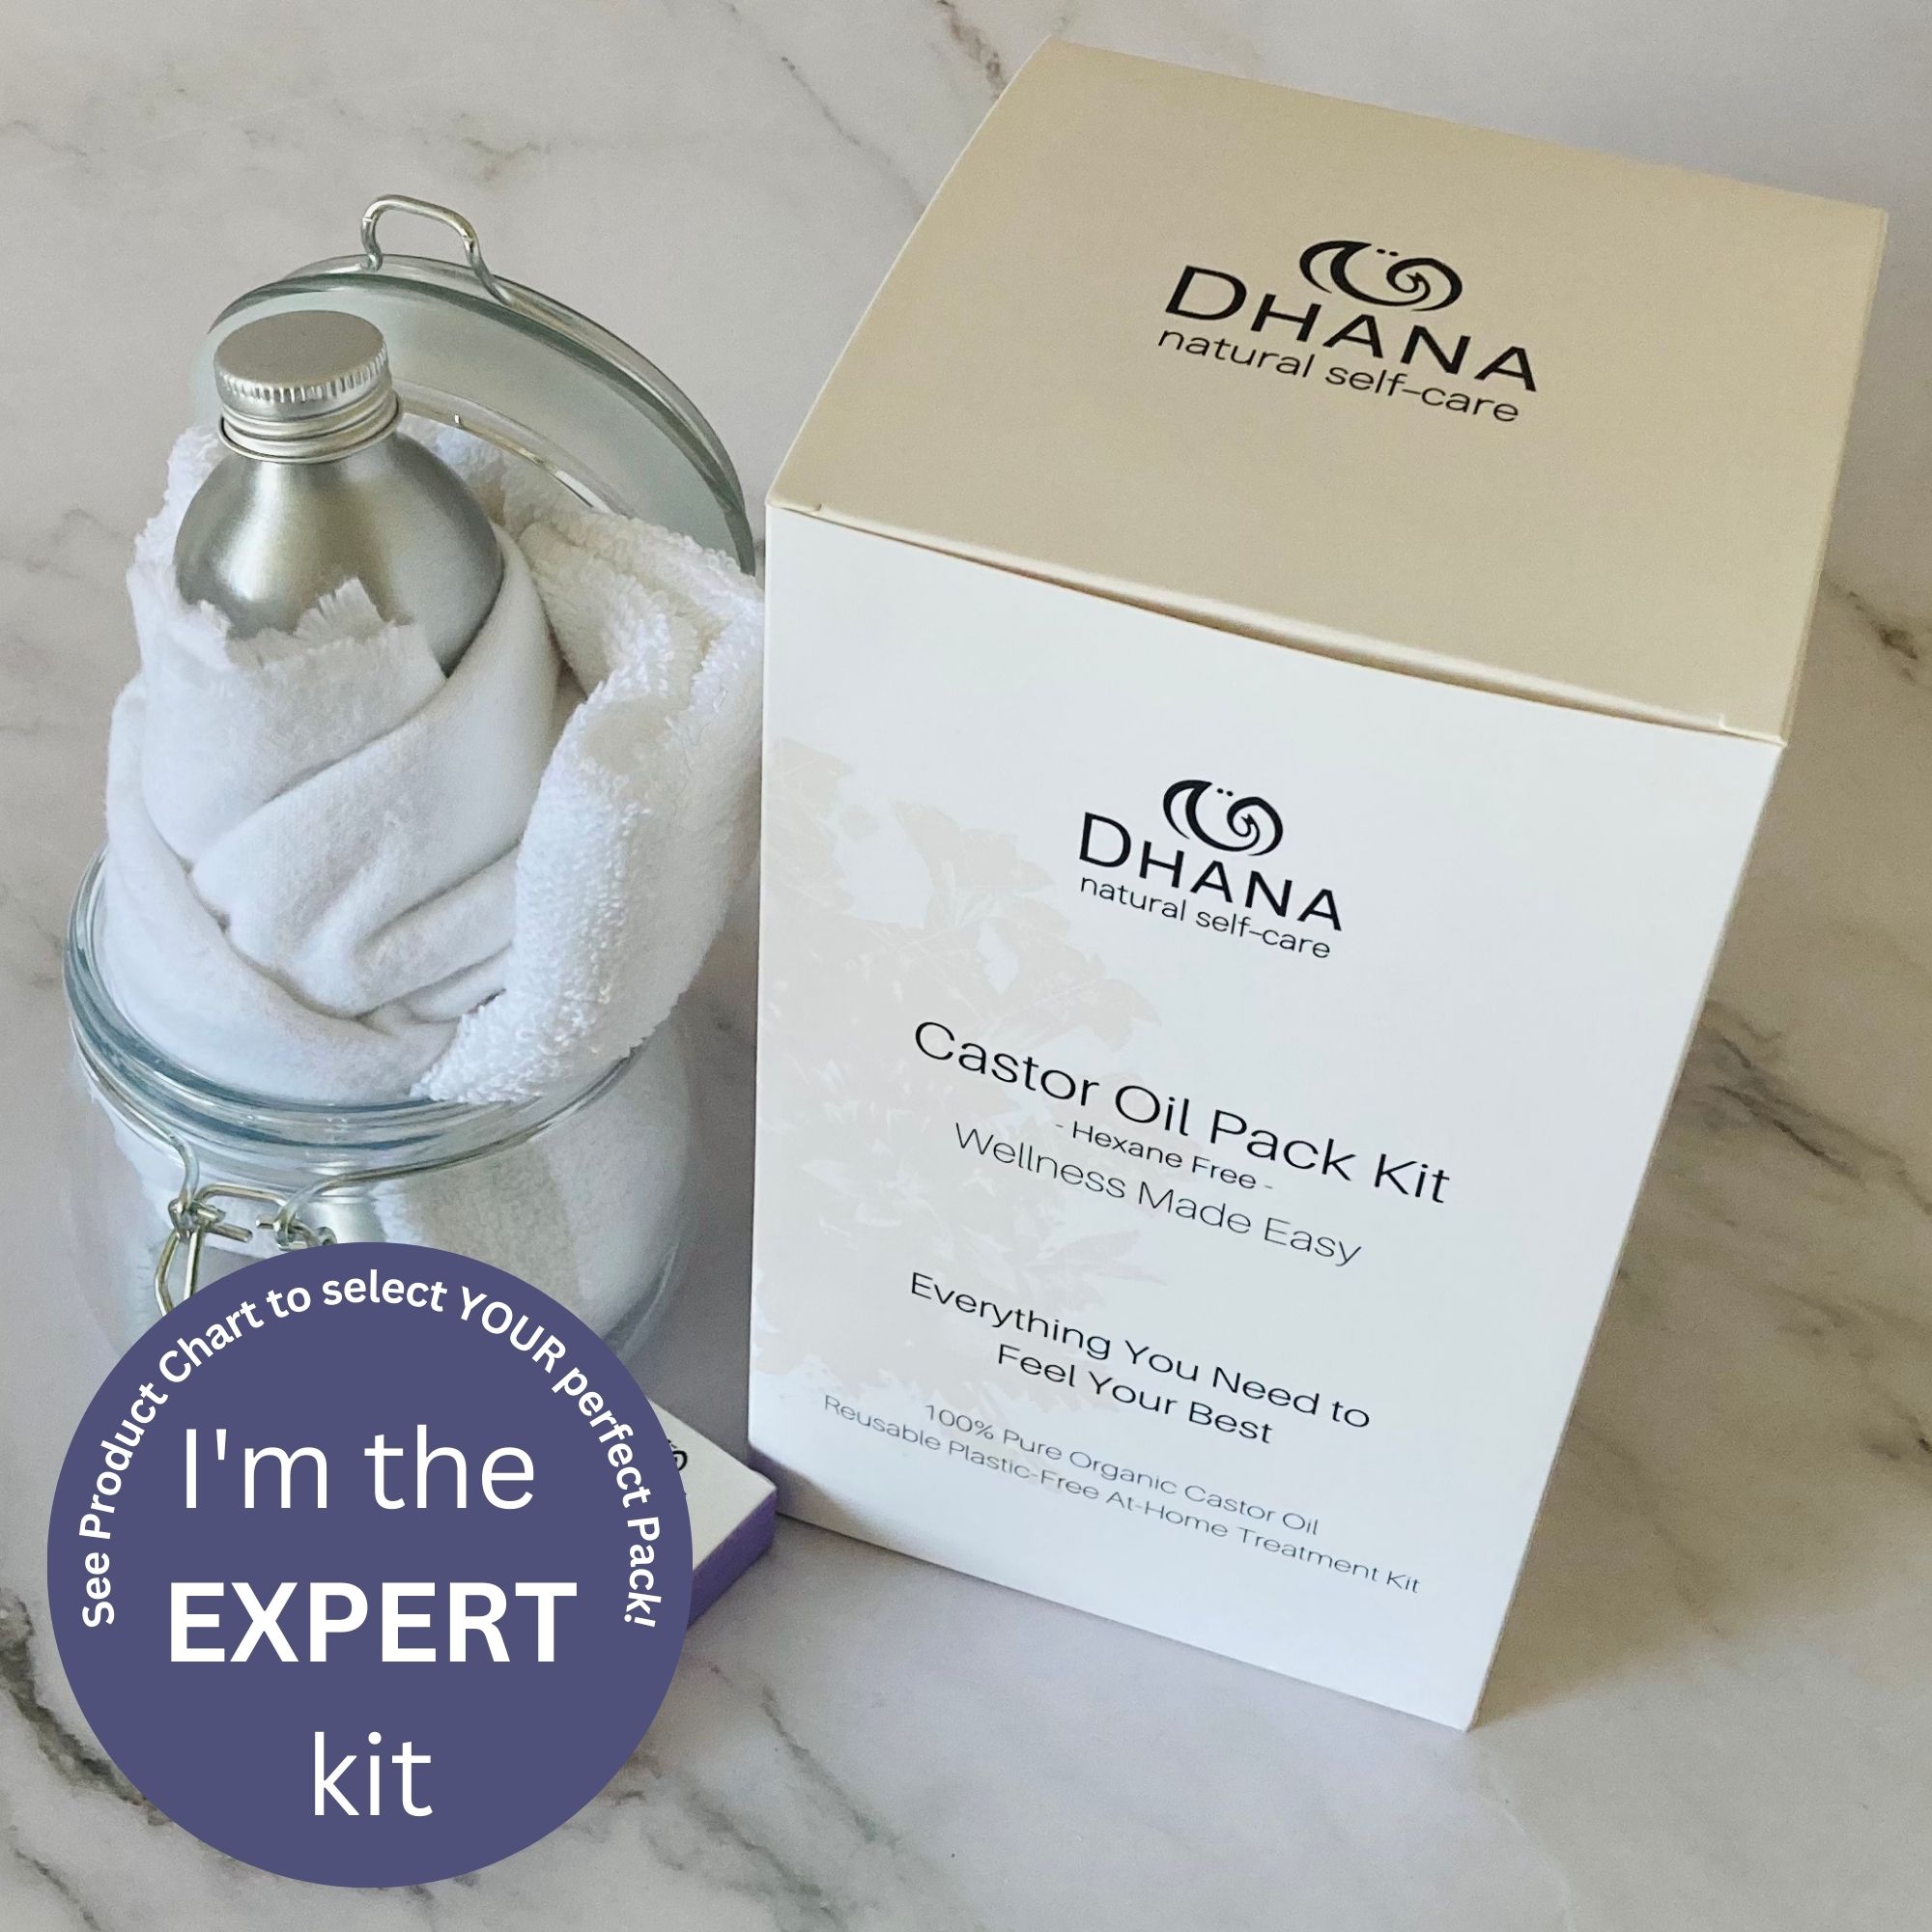 Expert Castor Oil Pack Kit from Dhana Self-Care